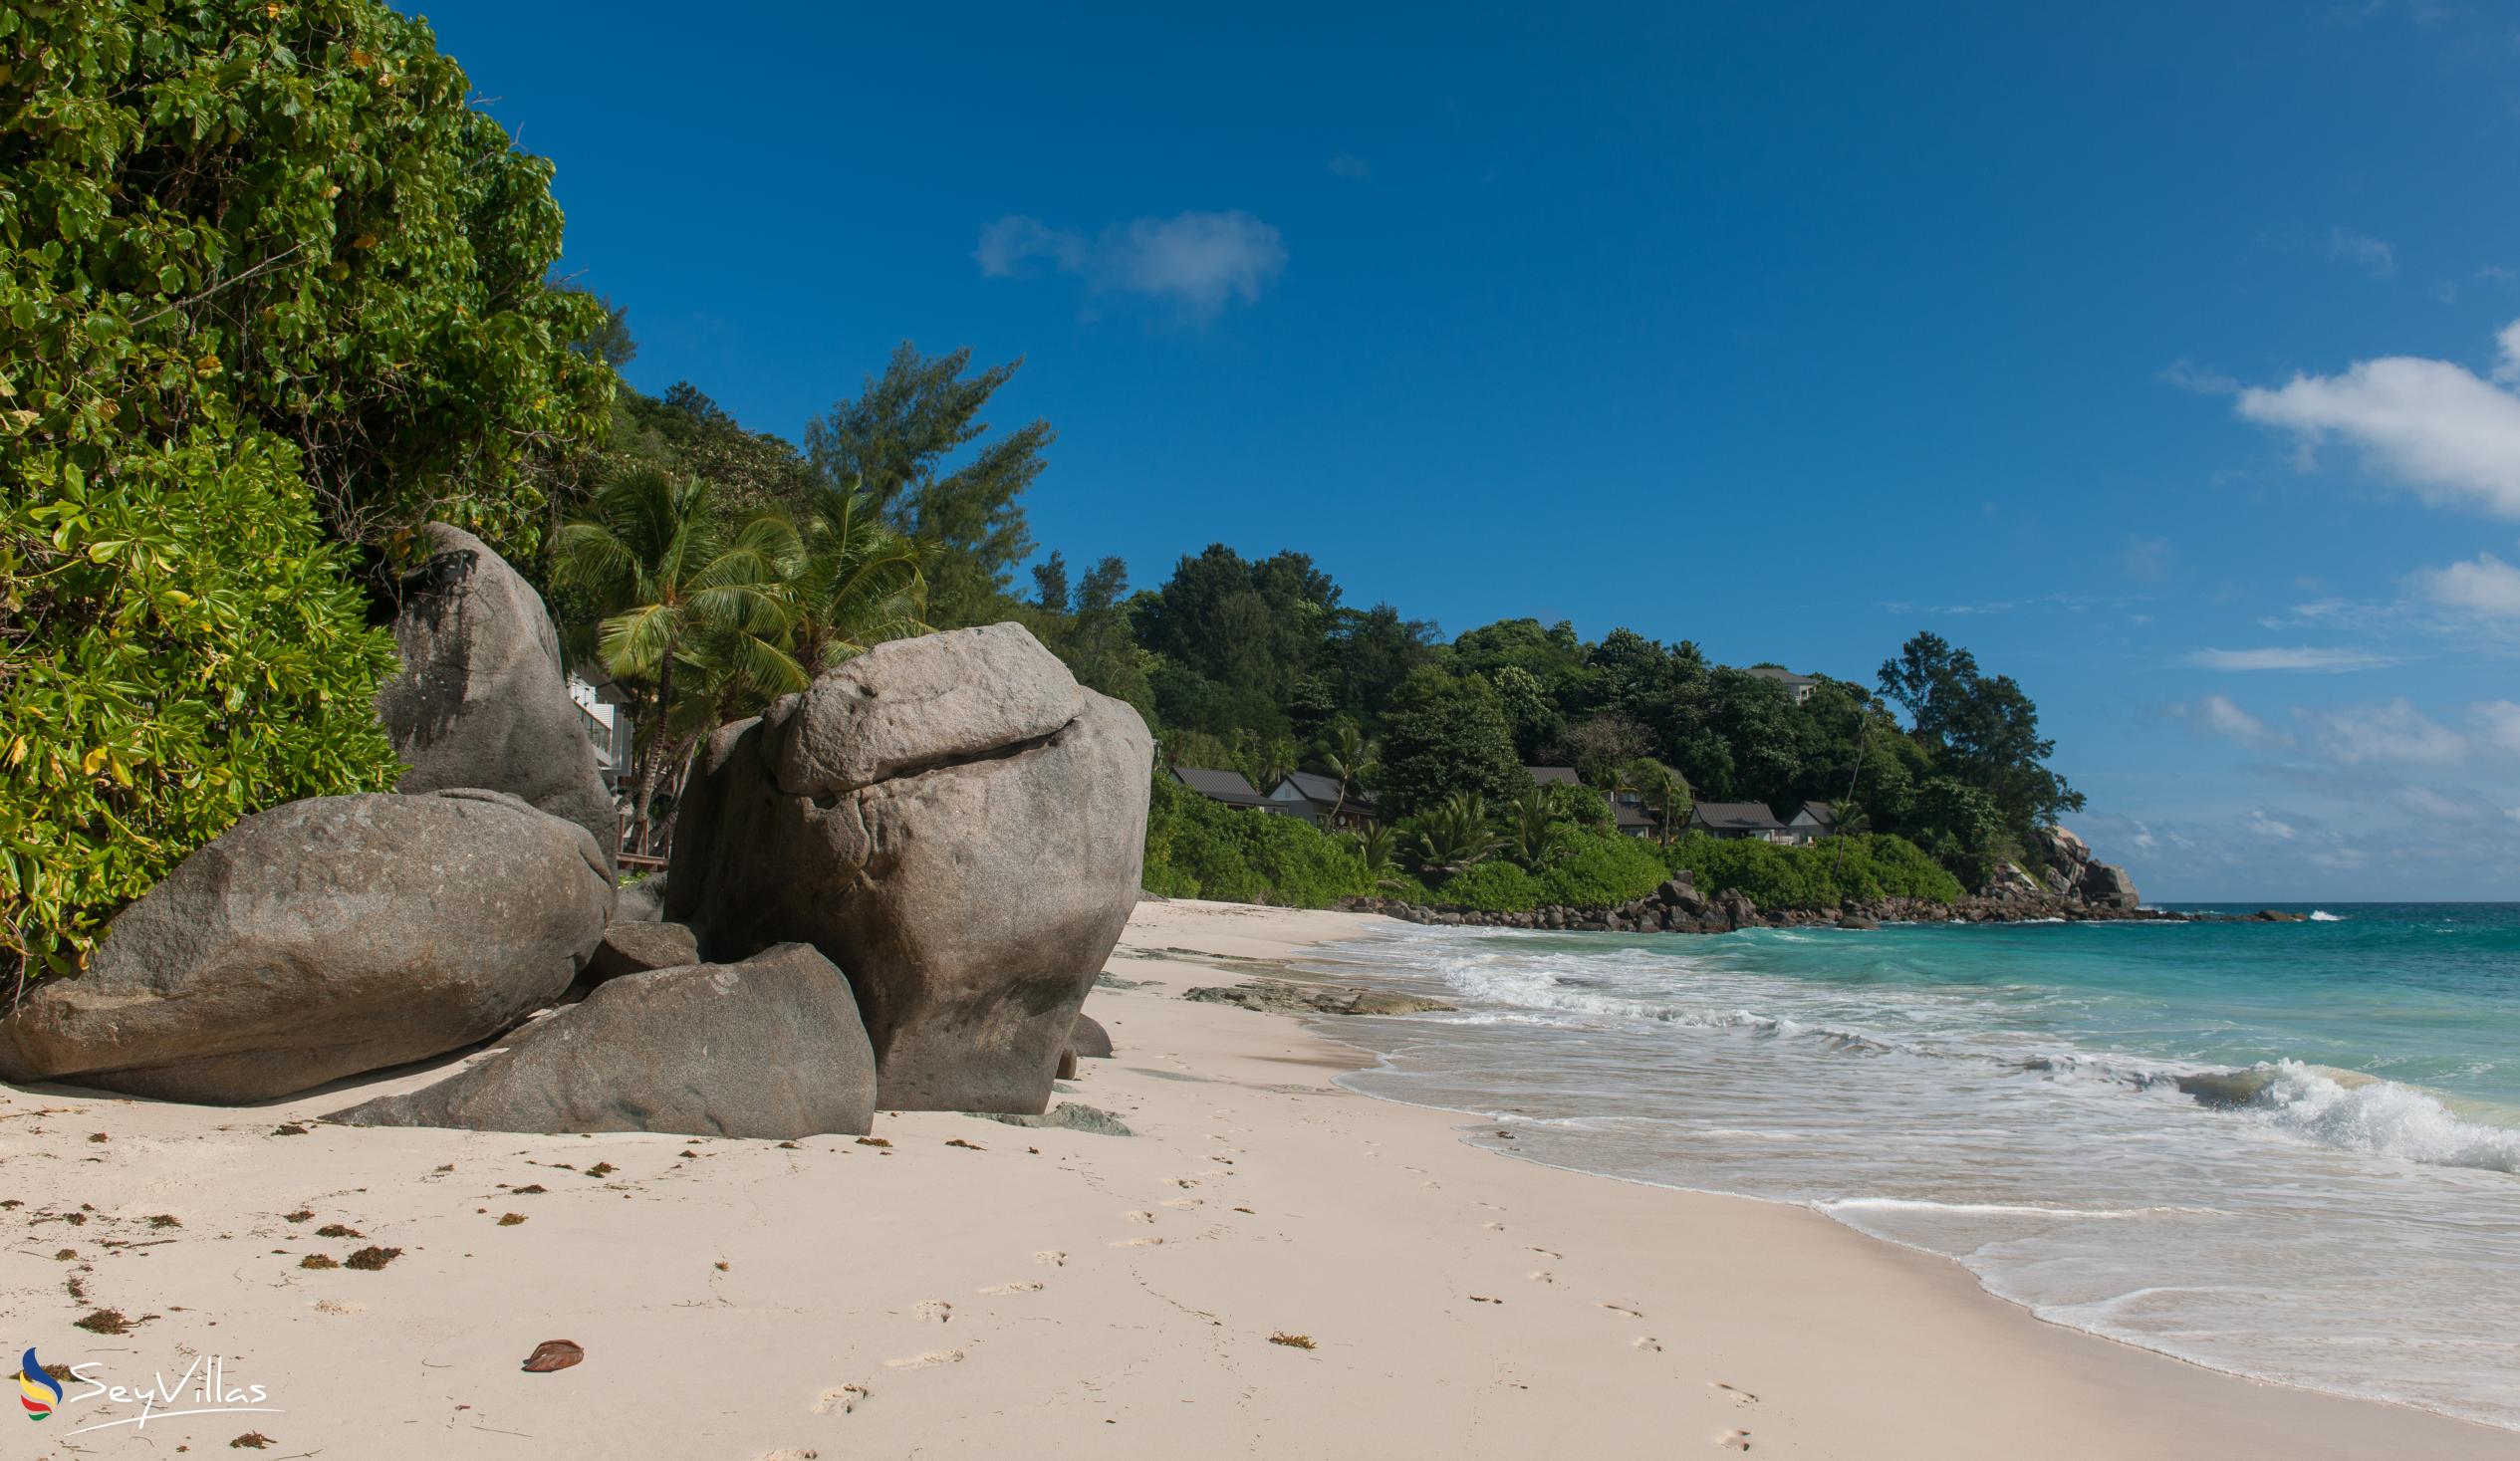 Foto 65: Carana Beach Hotel - Location - Mahé (Seychelles)